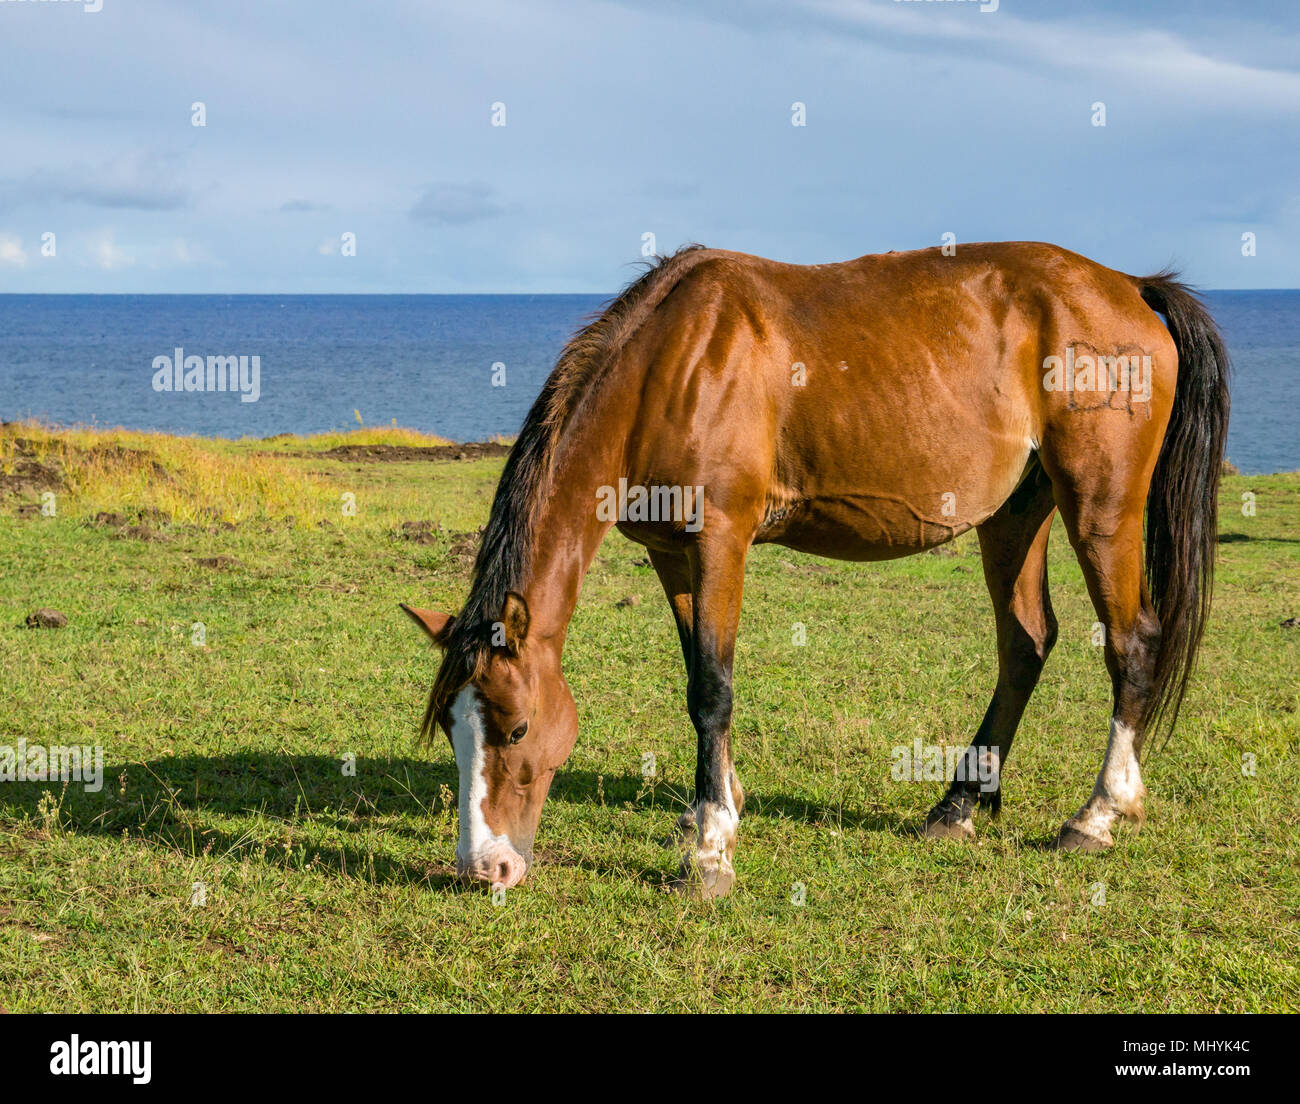 Wild Horse di pascolare su erba accanto al mare, con cielo blu, l'isola di pasqua, Cile Foto Stock